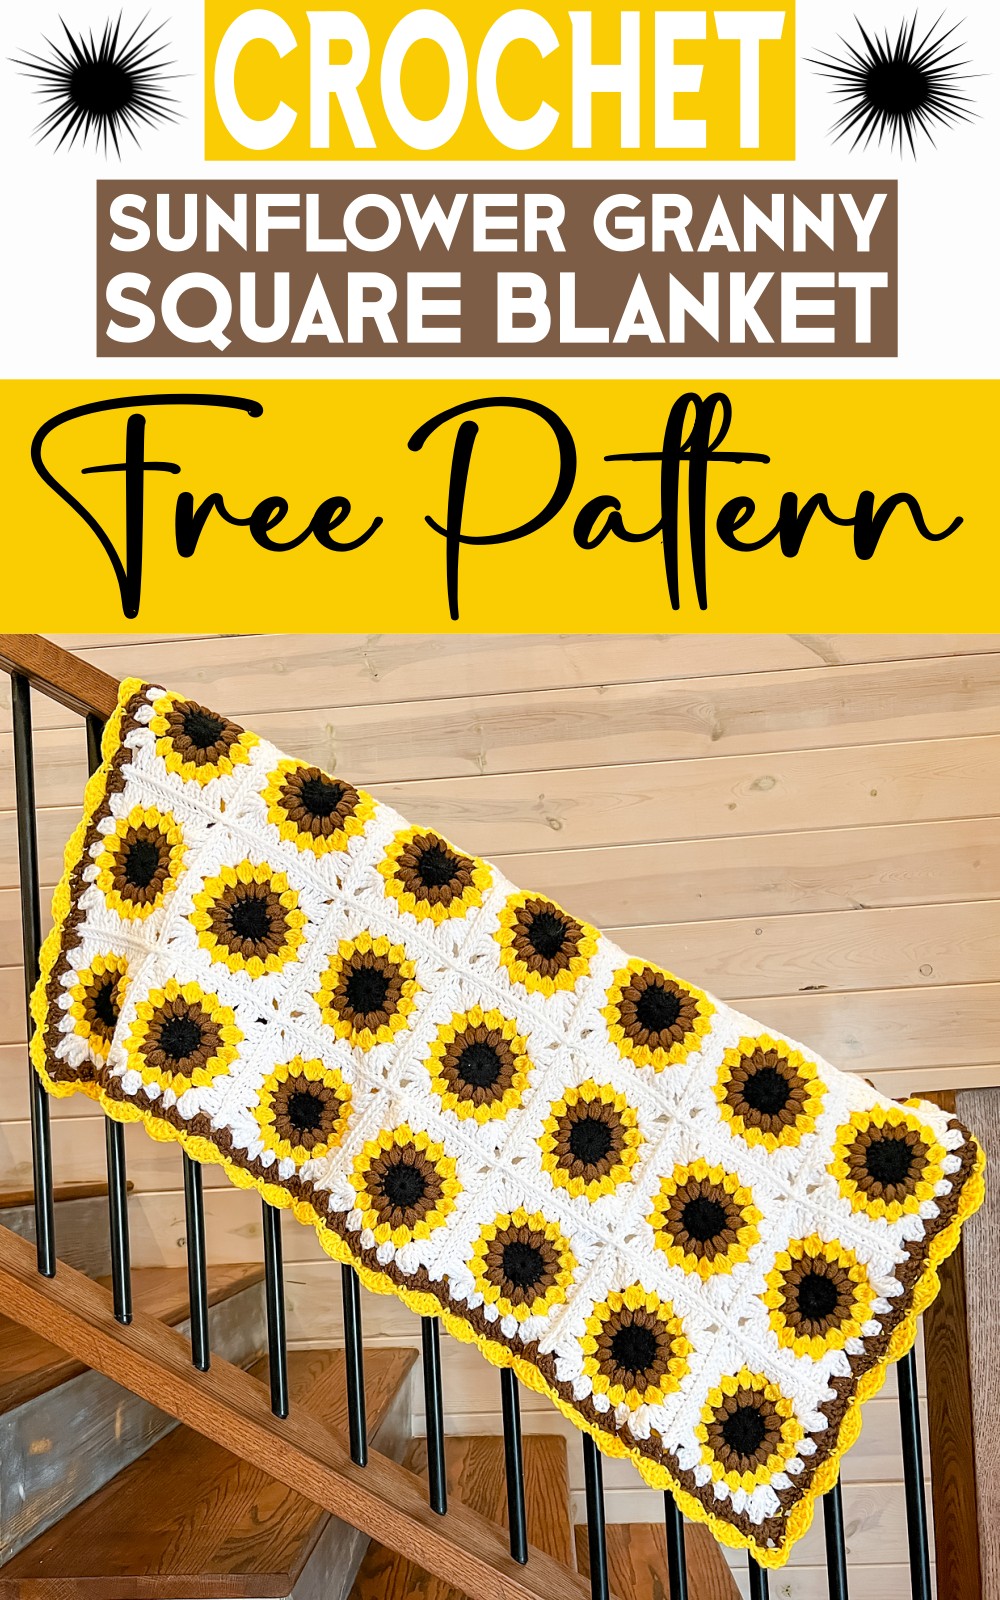 Sunflower Granny Square Blanket